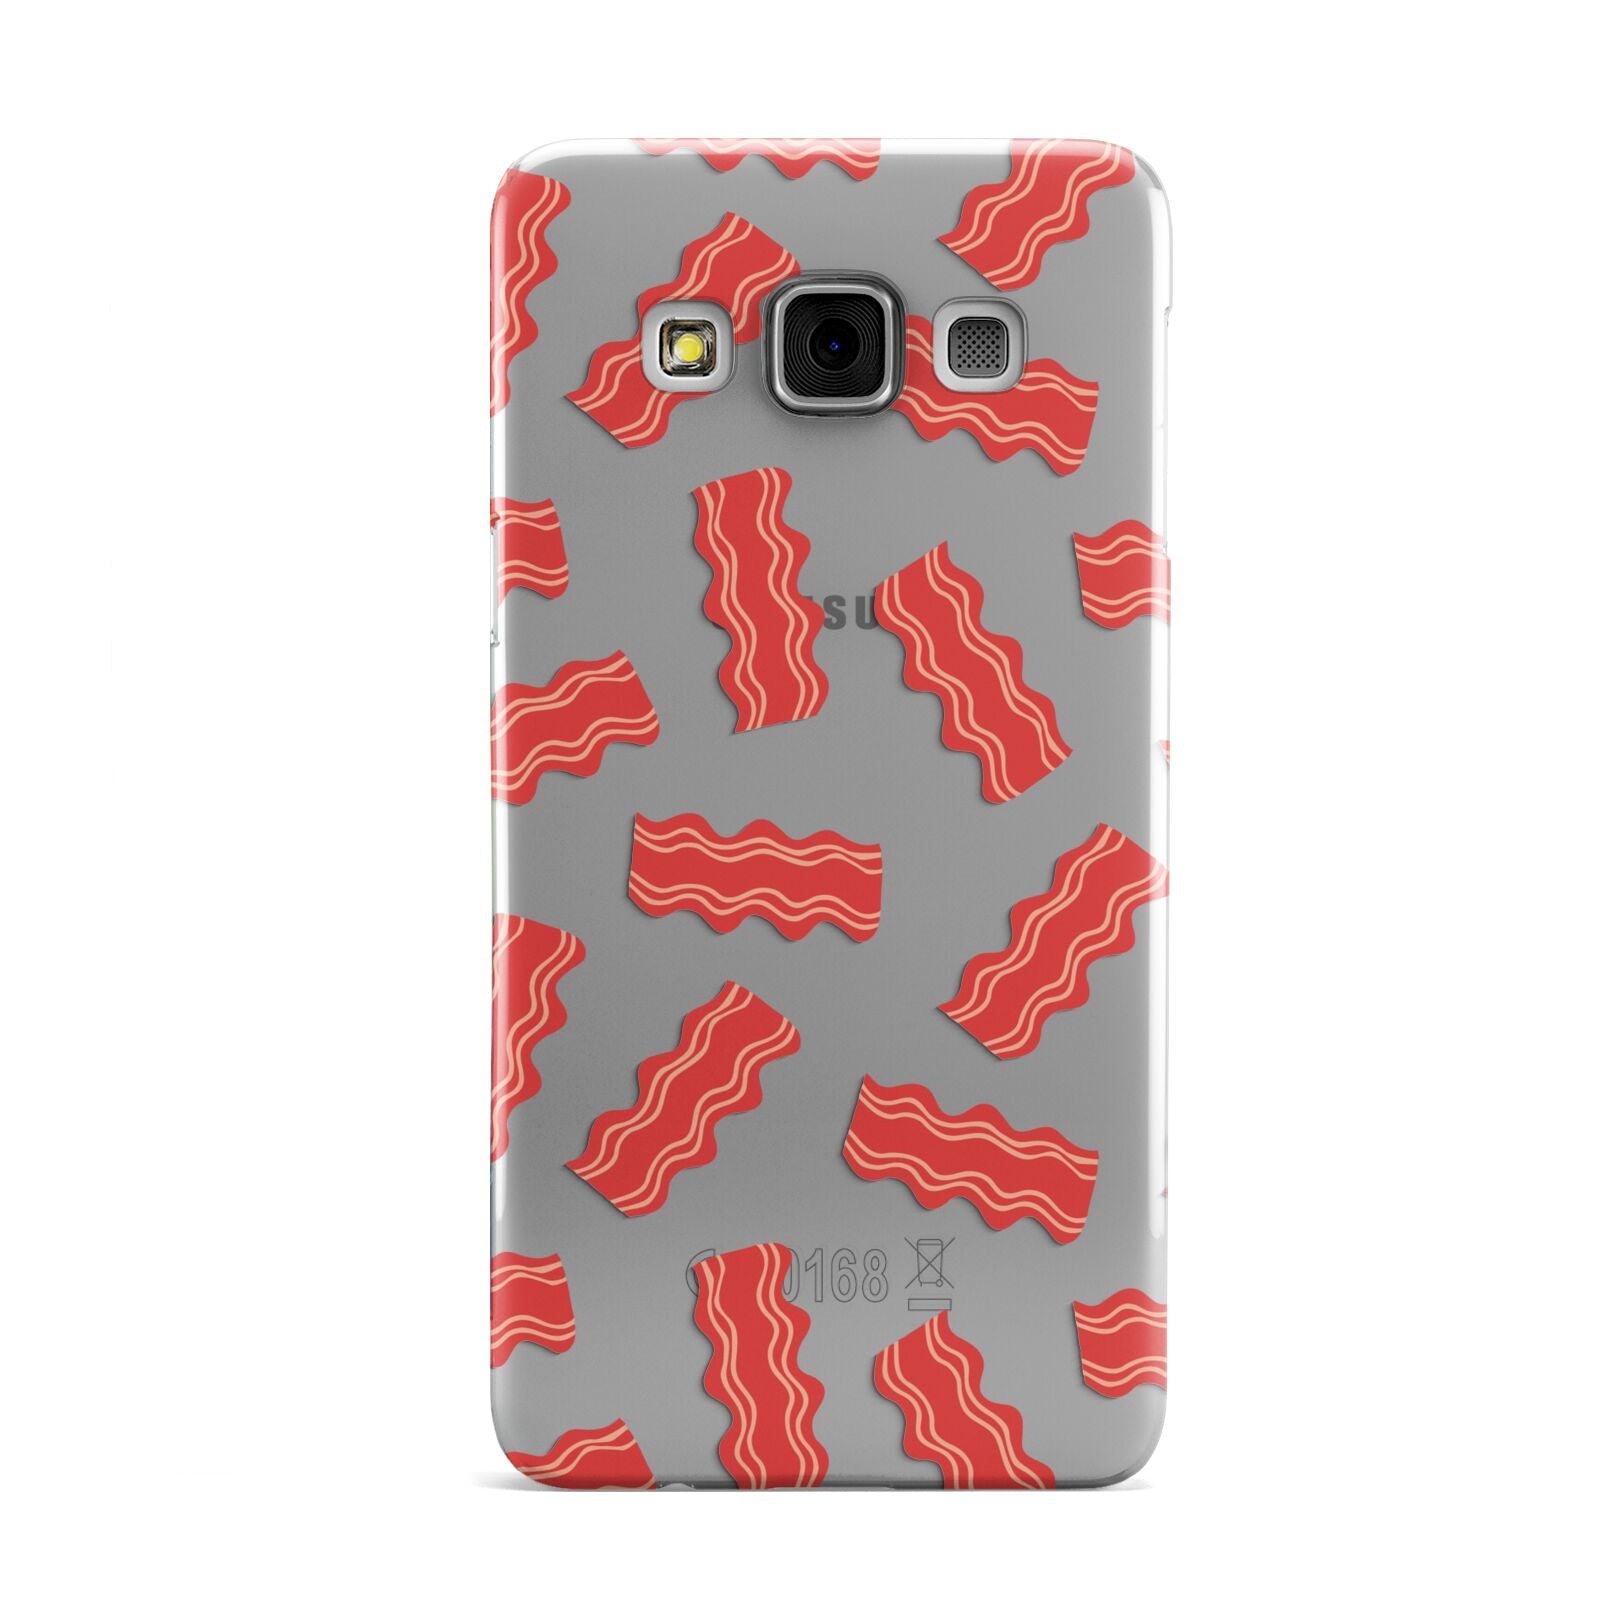 Bacon Samsung Galaxy A3 Case